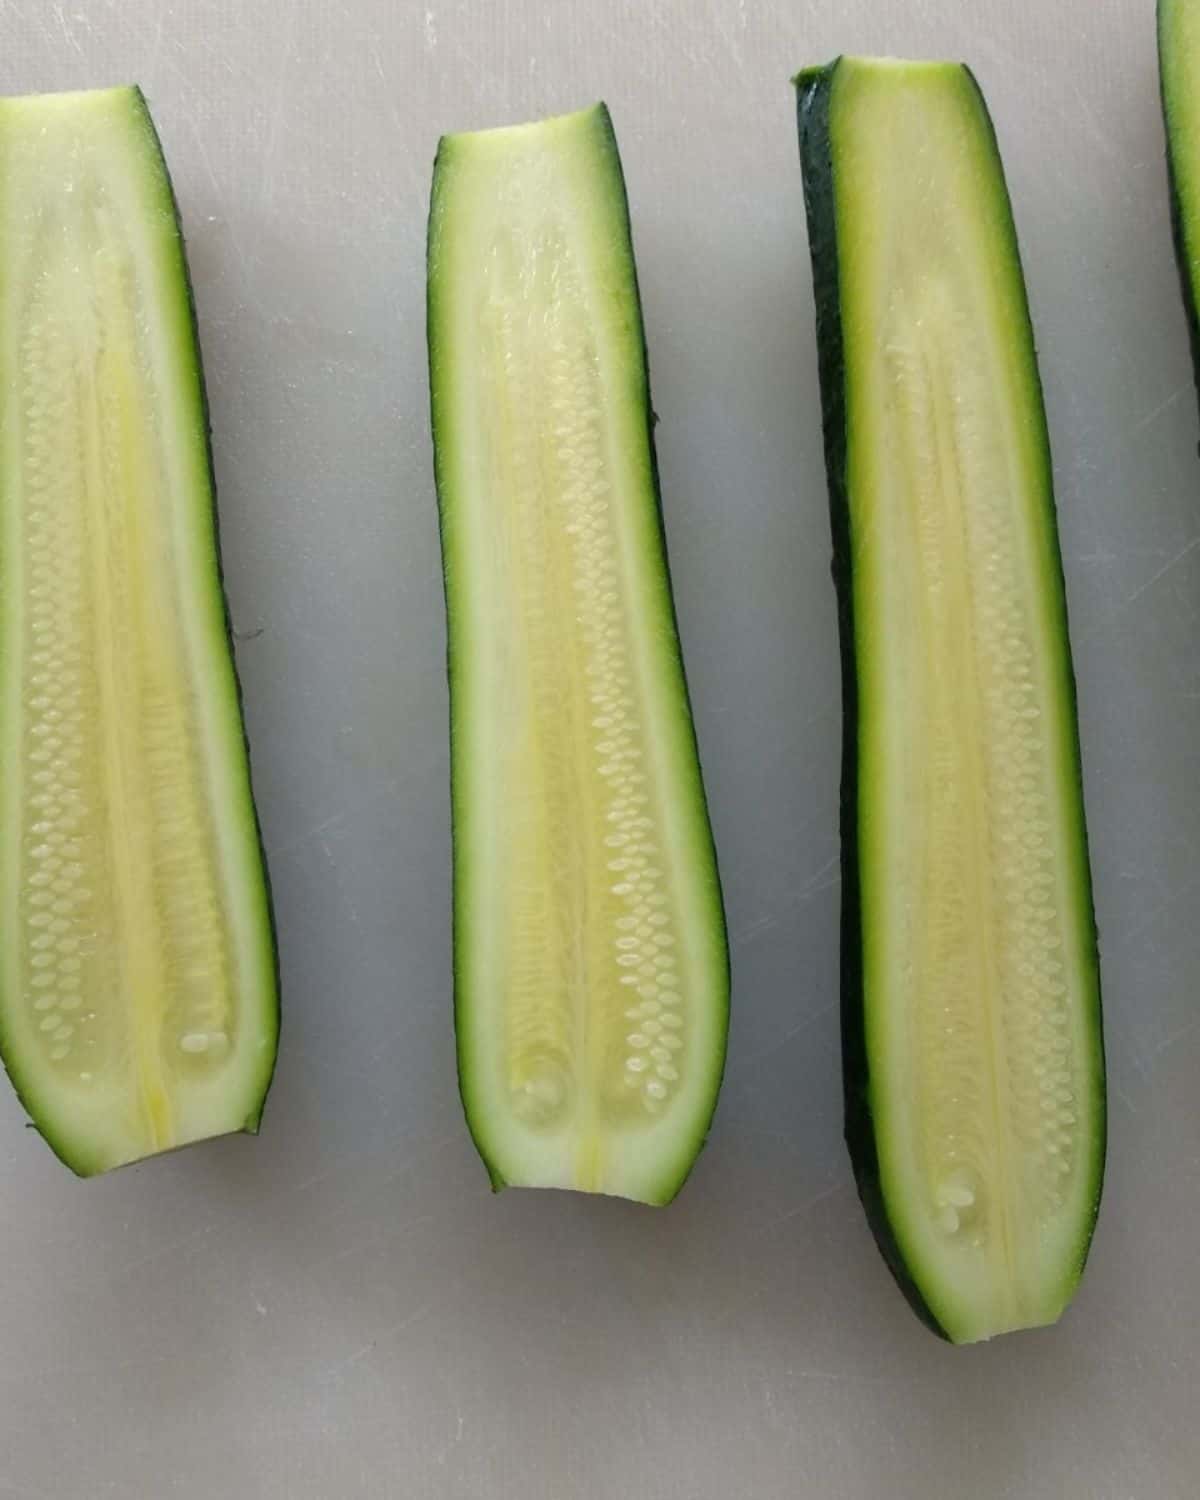 Process-half the zucchini